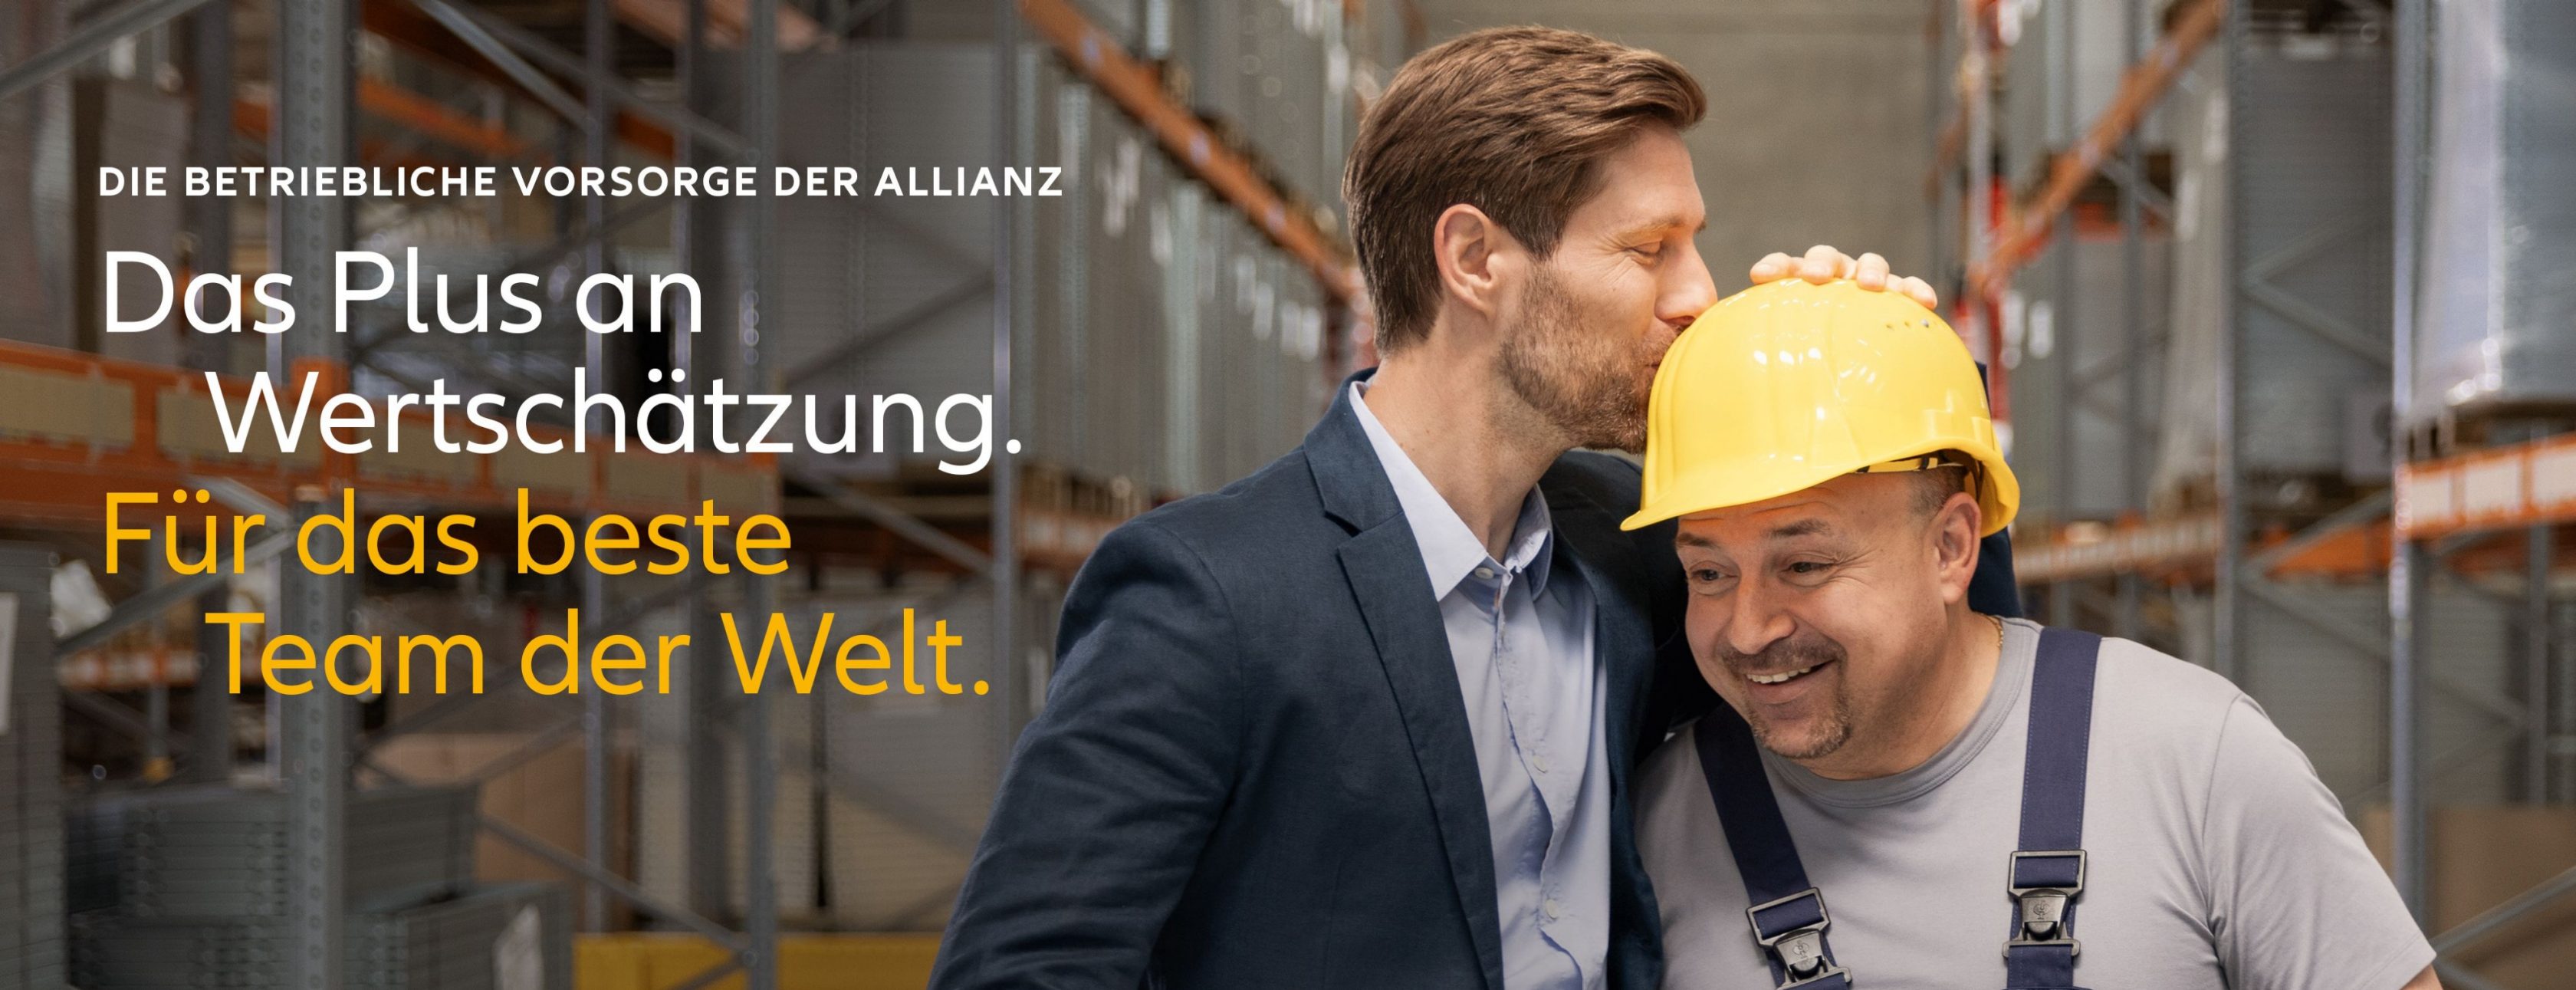 Allianz Versicherung Sven Fuchs Bentwisch - Vertrauensvolle Zusammenarbeit auf allen Ebenen